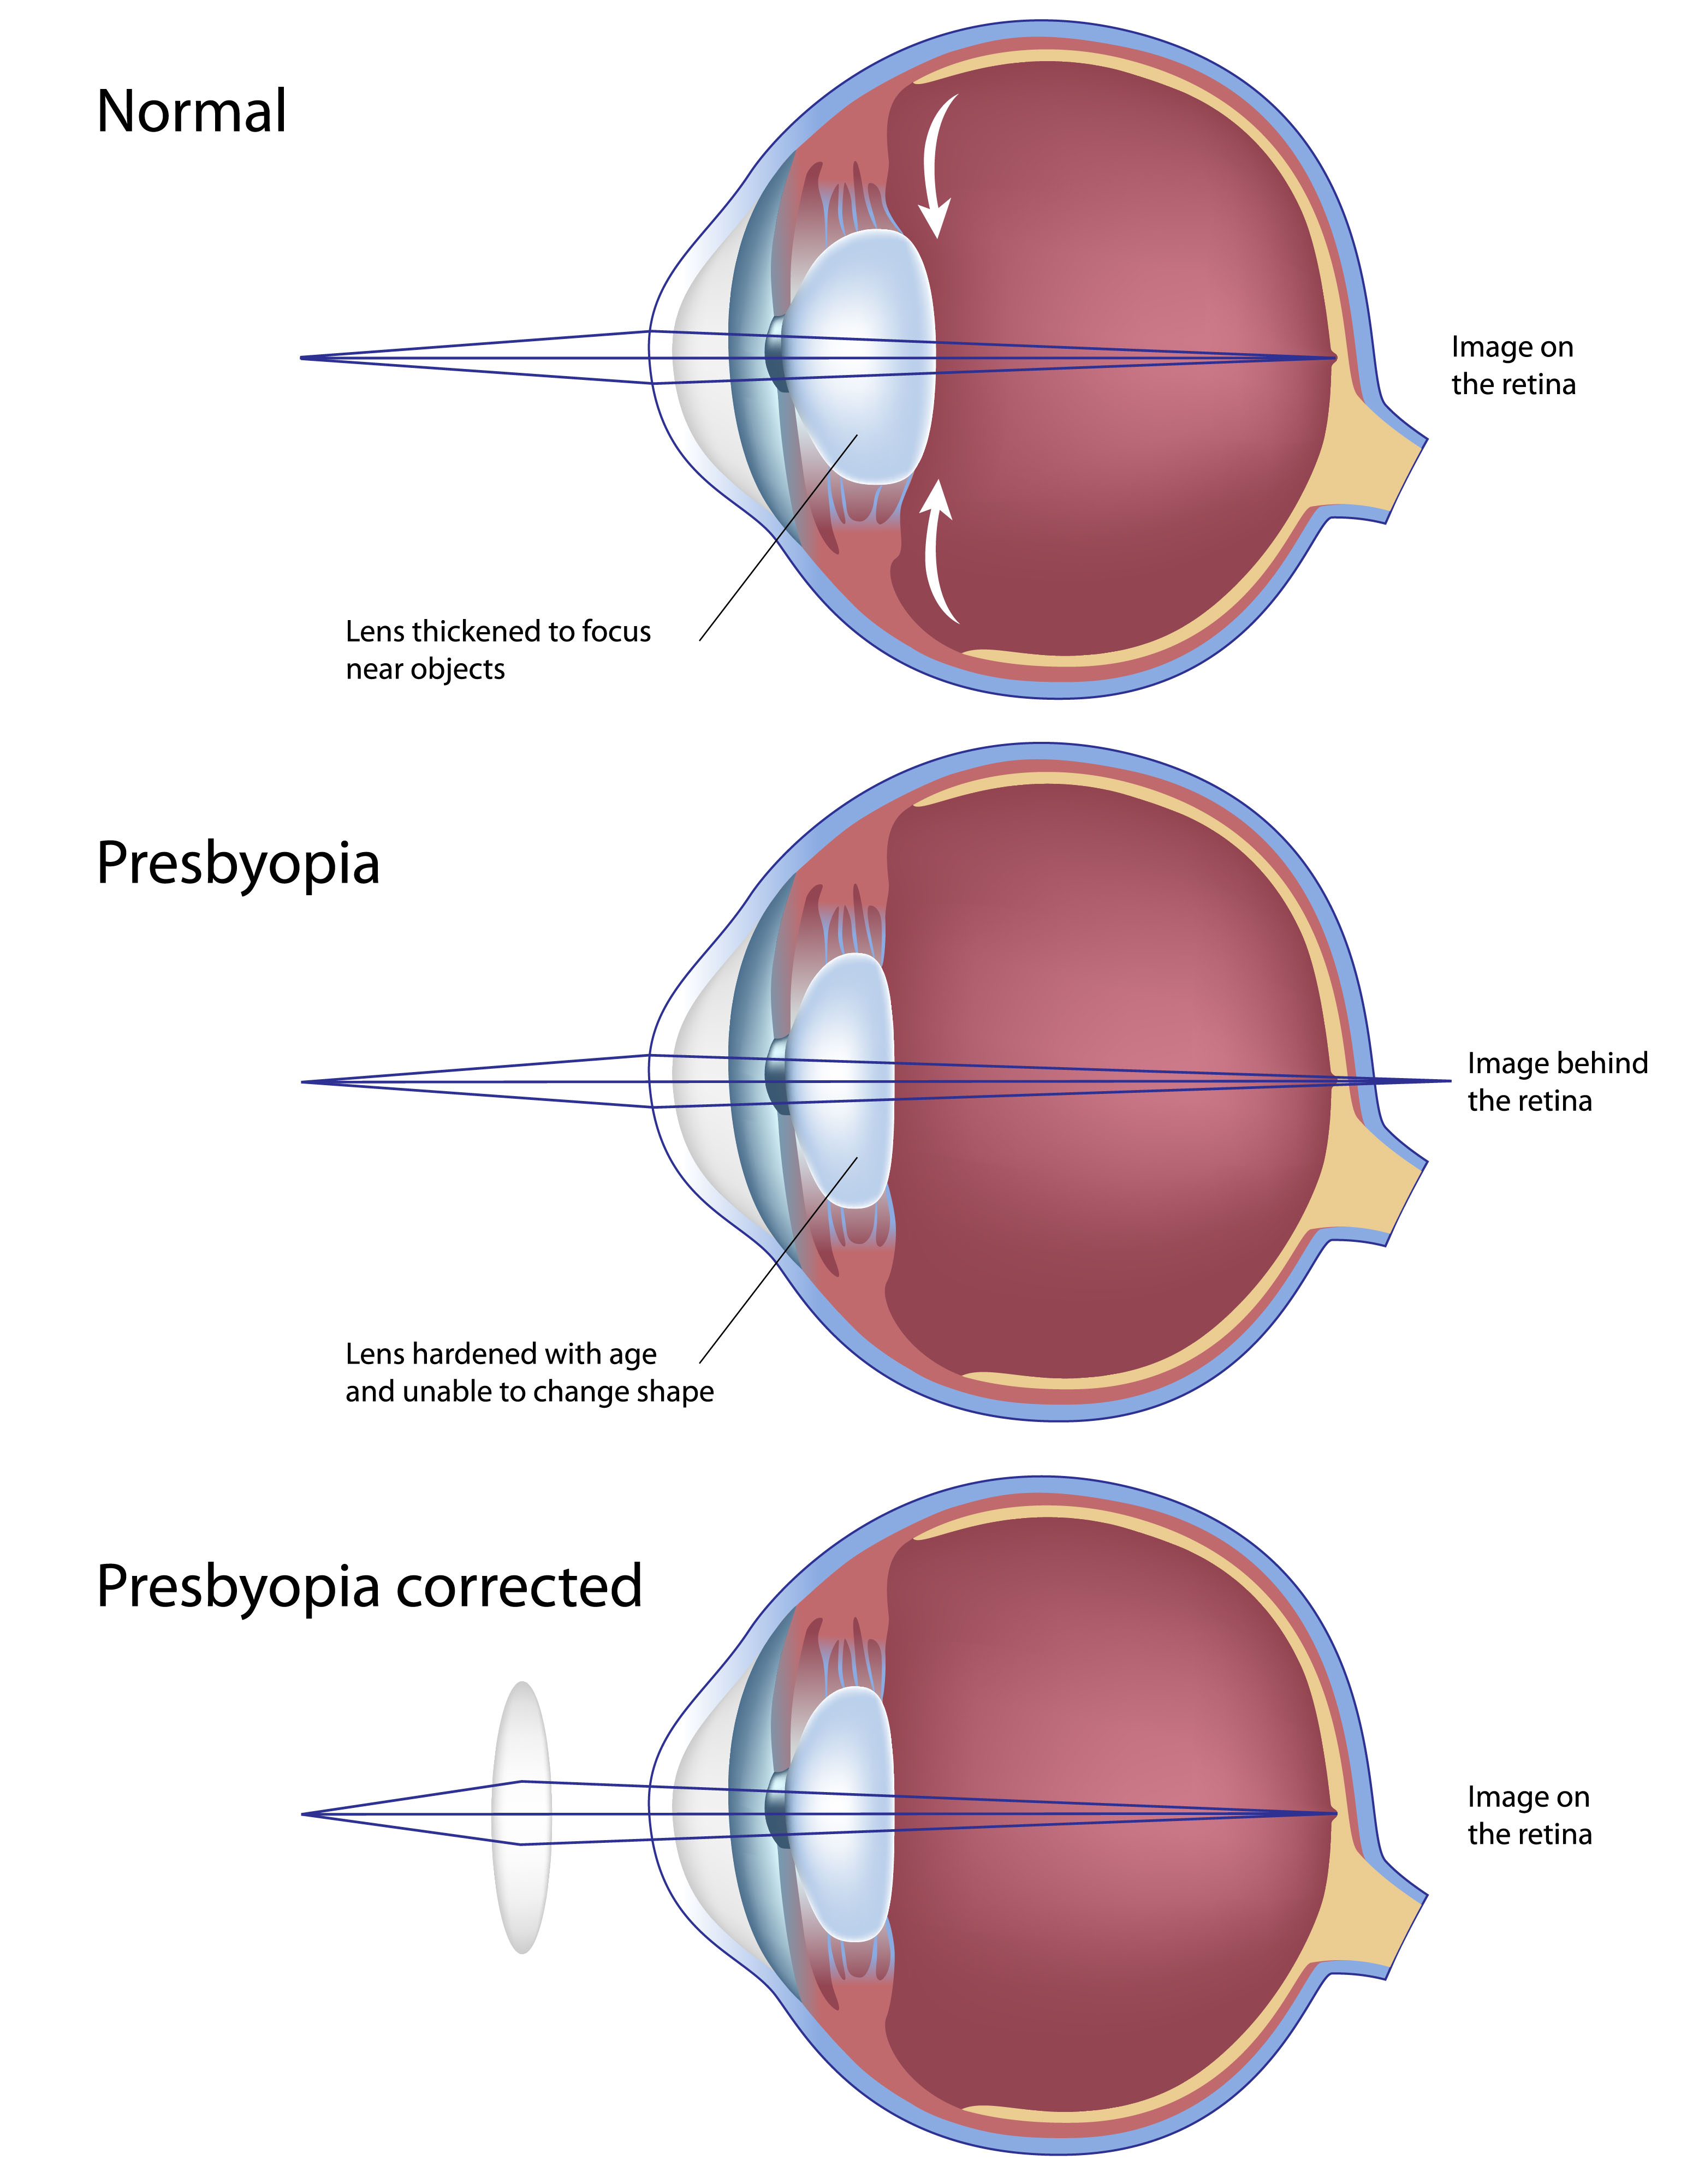 myopia és presbyopia